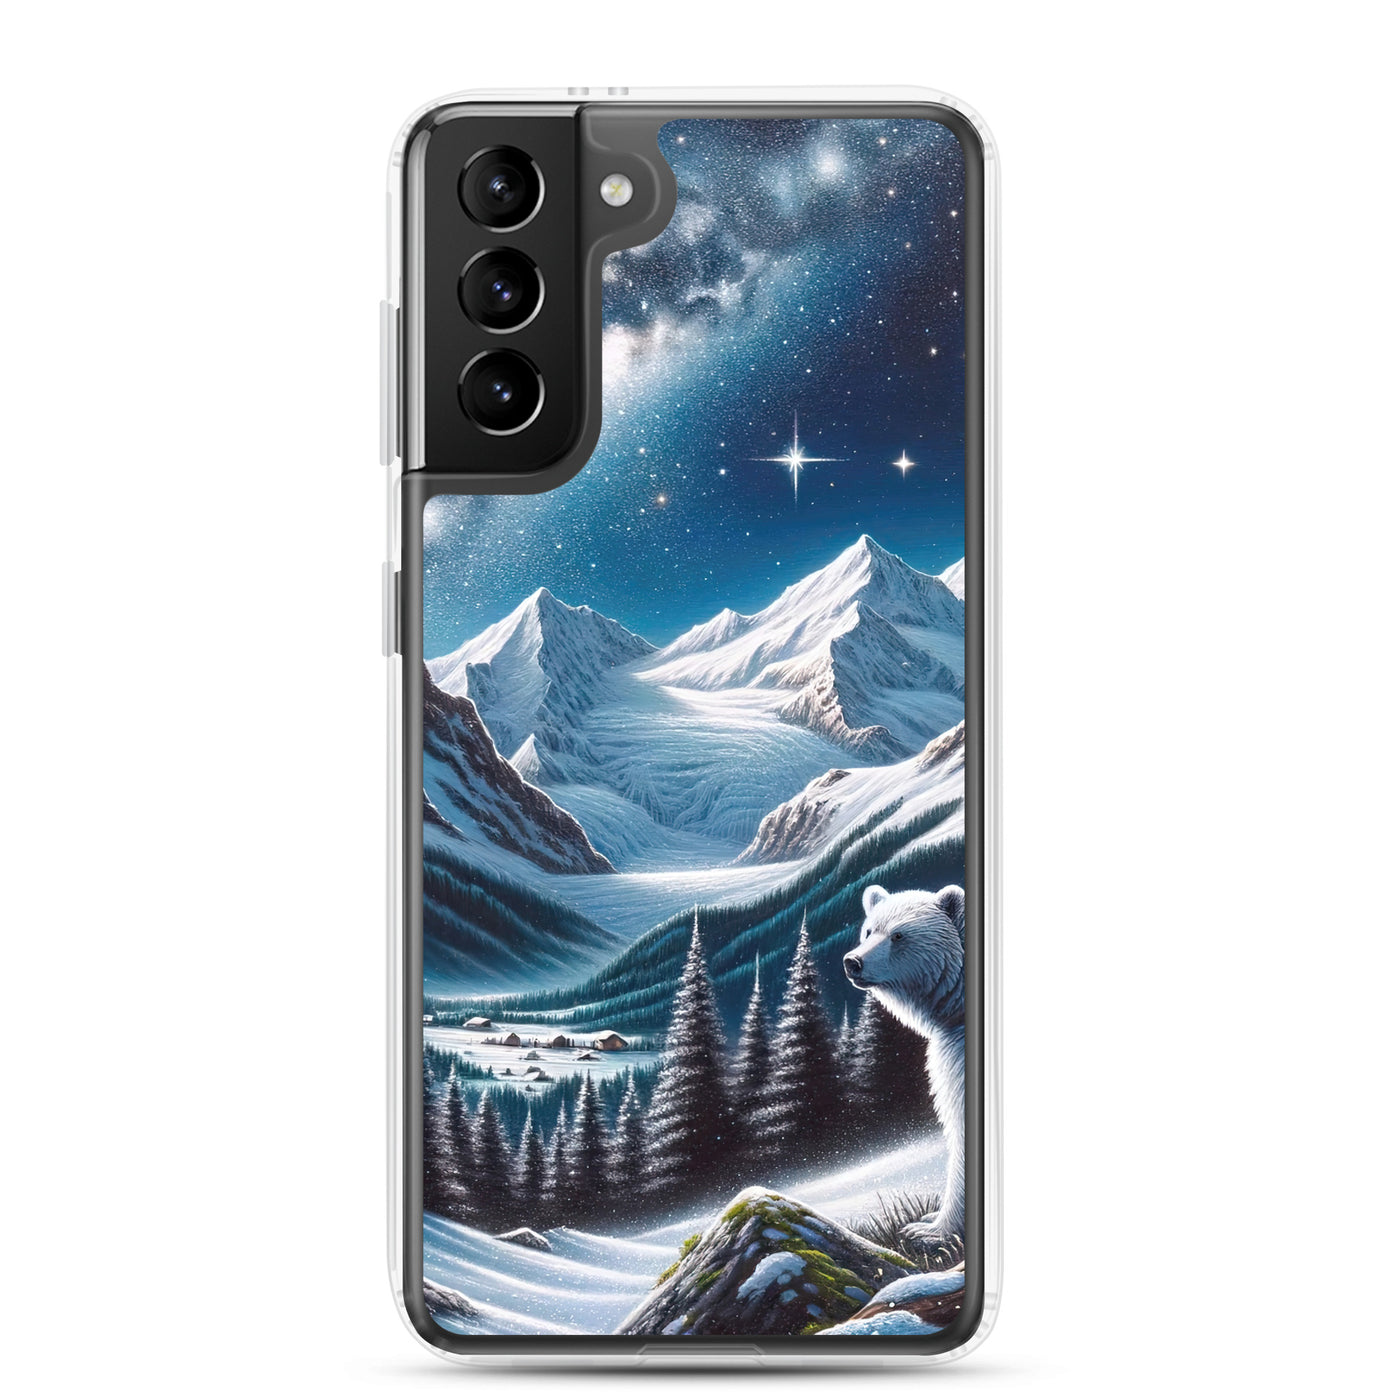 Sternennacht und Eisbär: Acrylgemälde mit Milchstraße, Alpen und schneebedeckte Gipfel - Samsung Schutzhülle (durchsichtig) camping xxx yyy zzz Samsung Galaxy S21 Plus